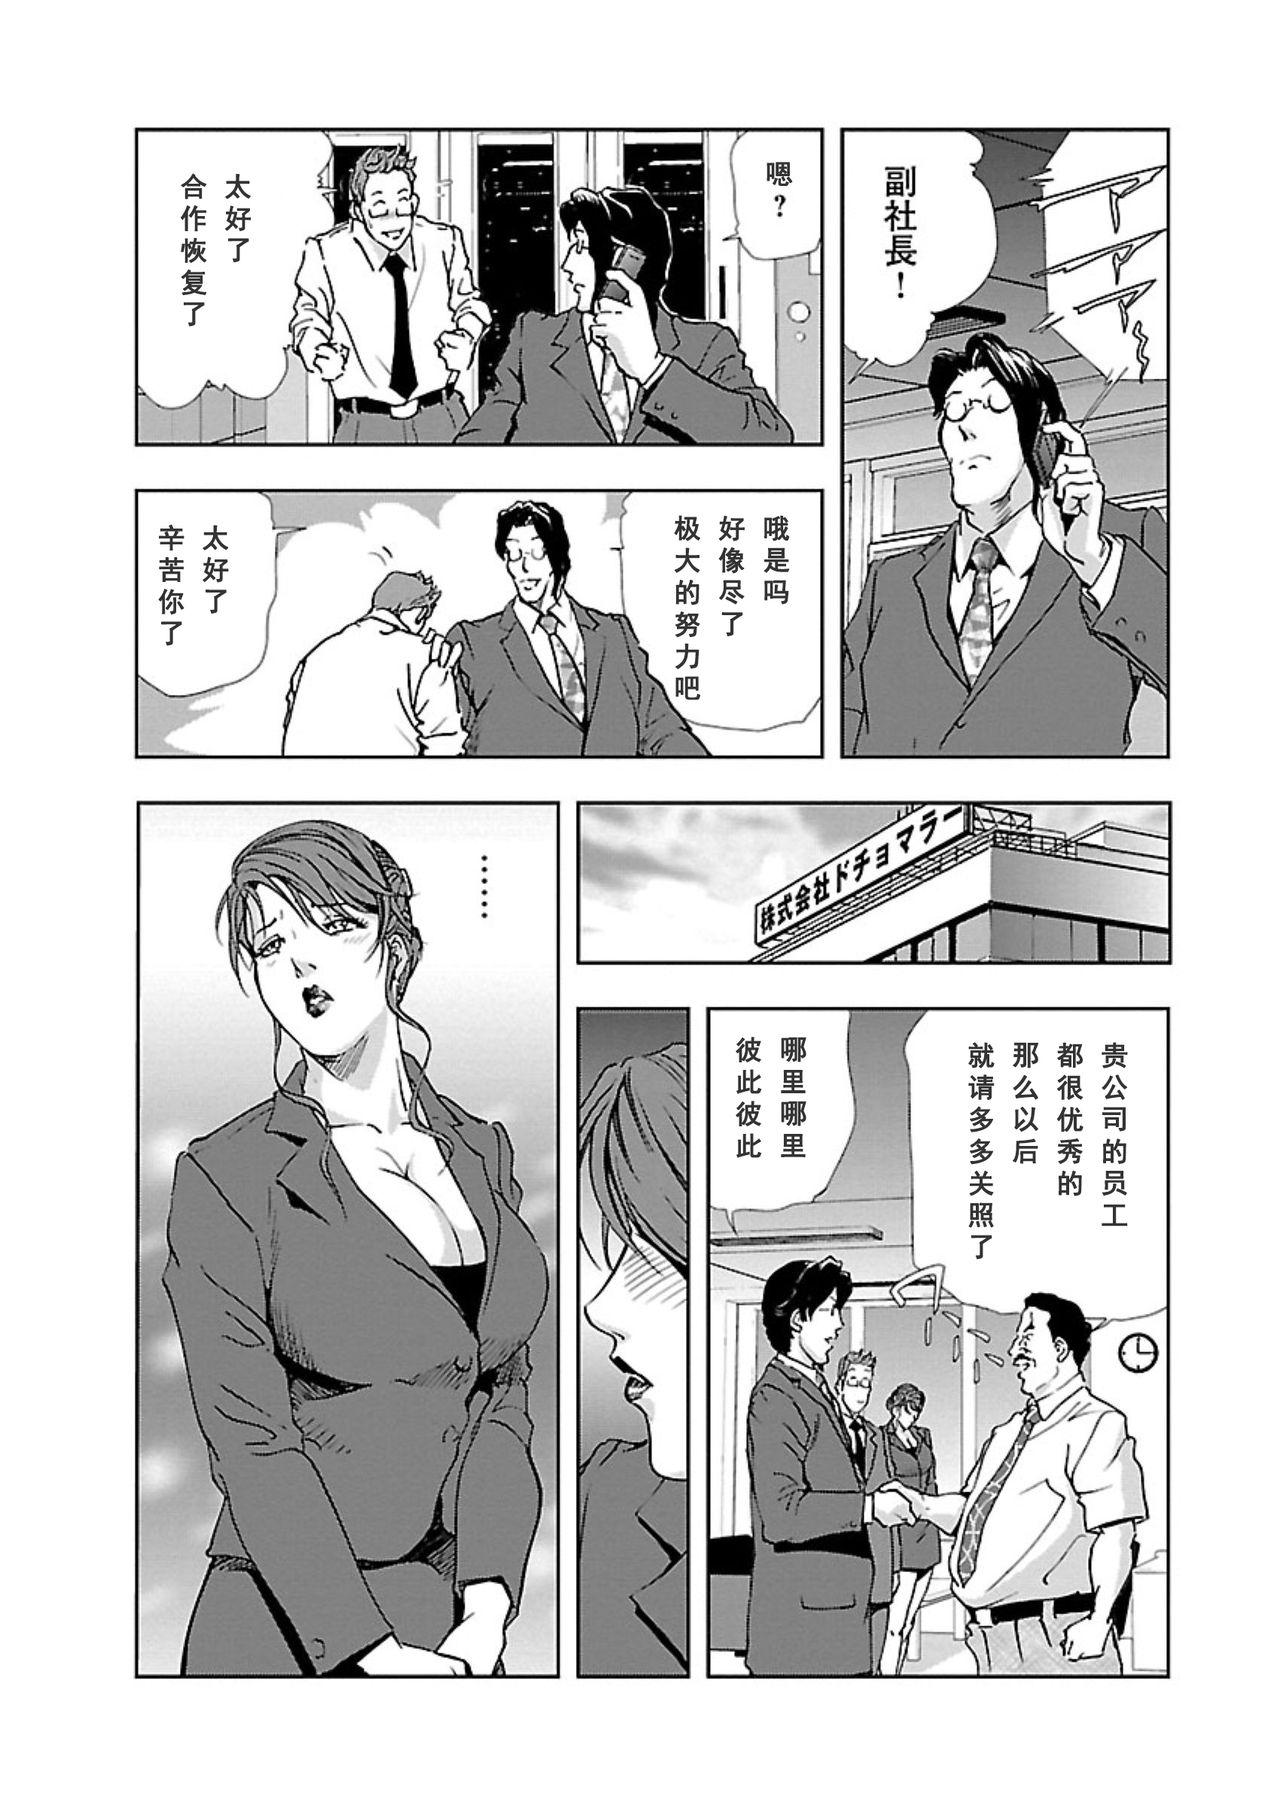 【不可视汉化】[Misaki Yukihiro] Nikuhisyo Yukiko chapter 04  [Digital] 23